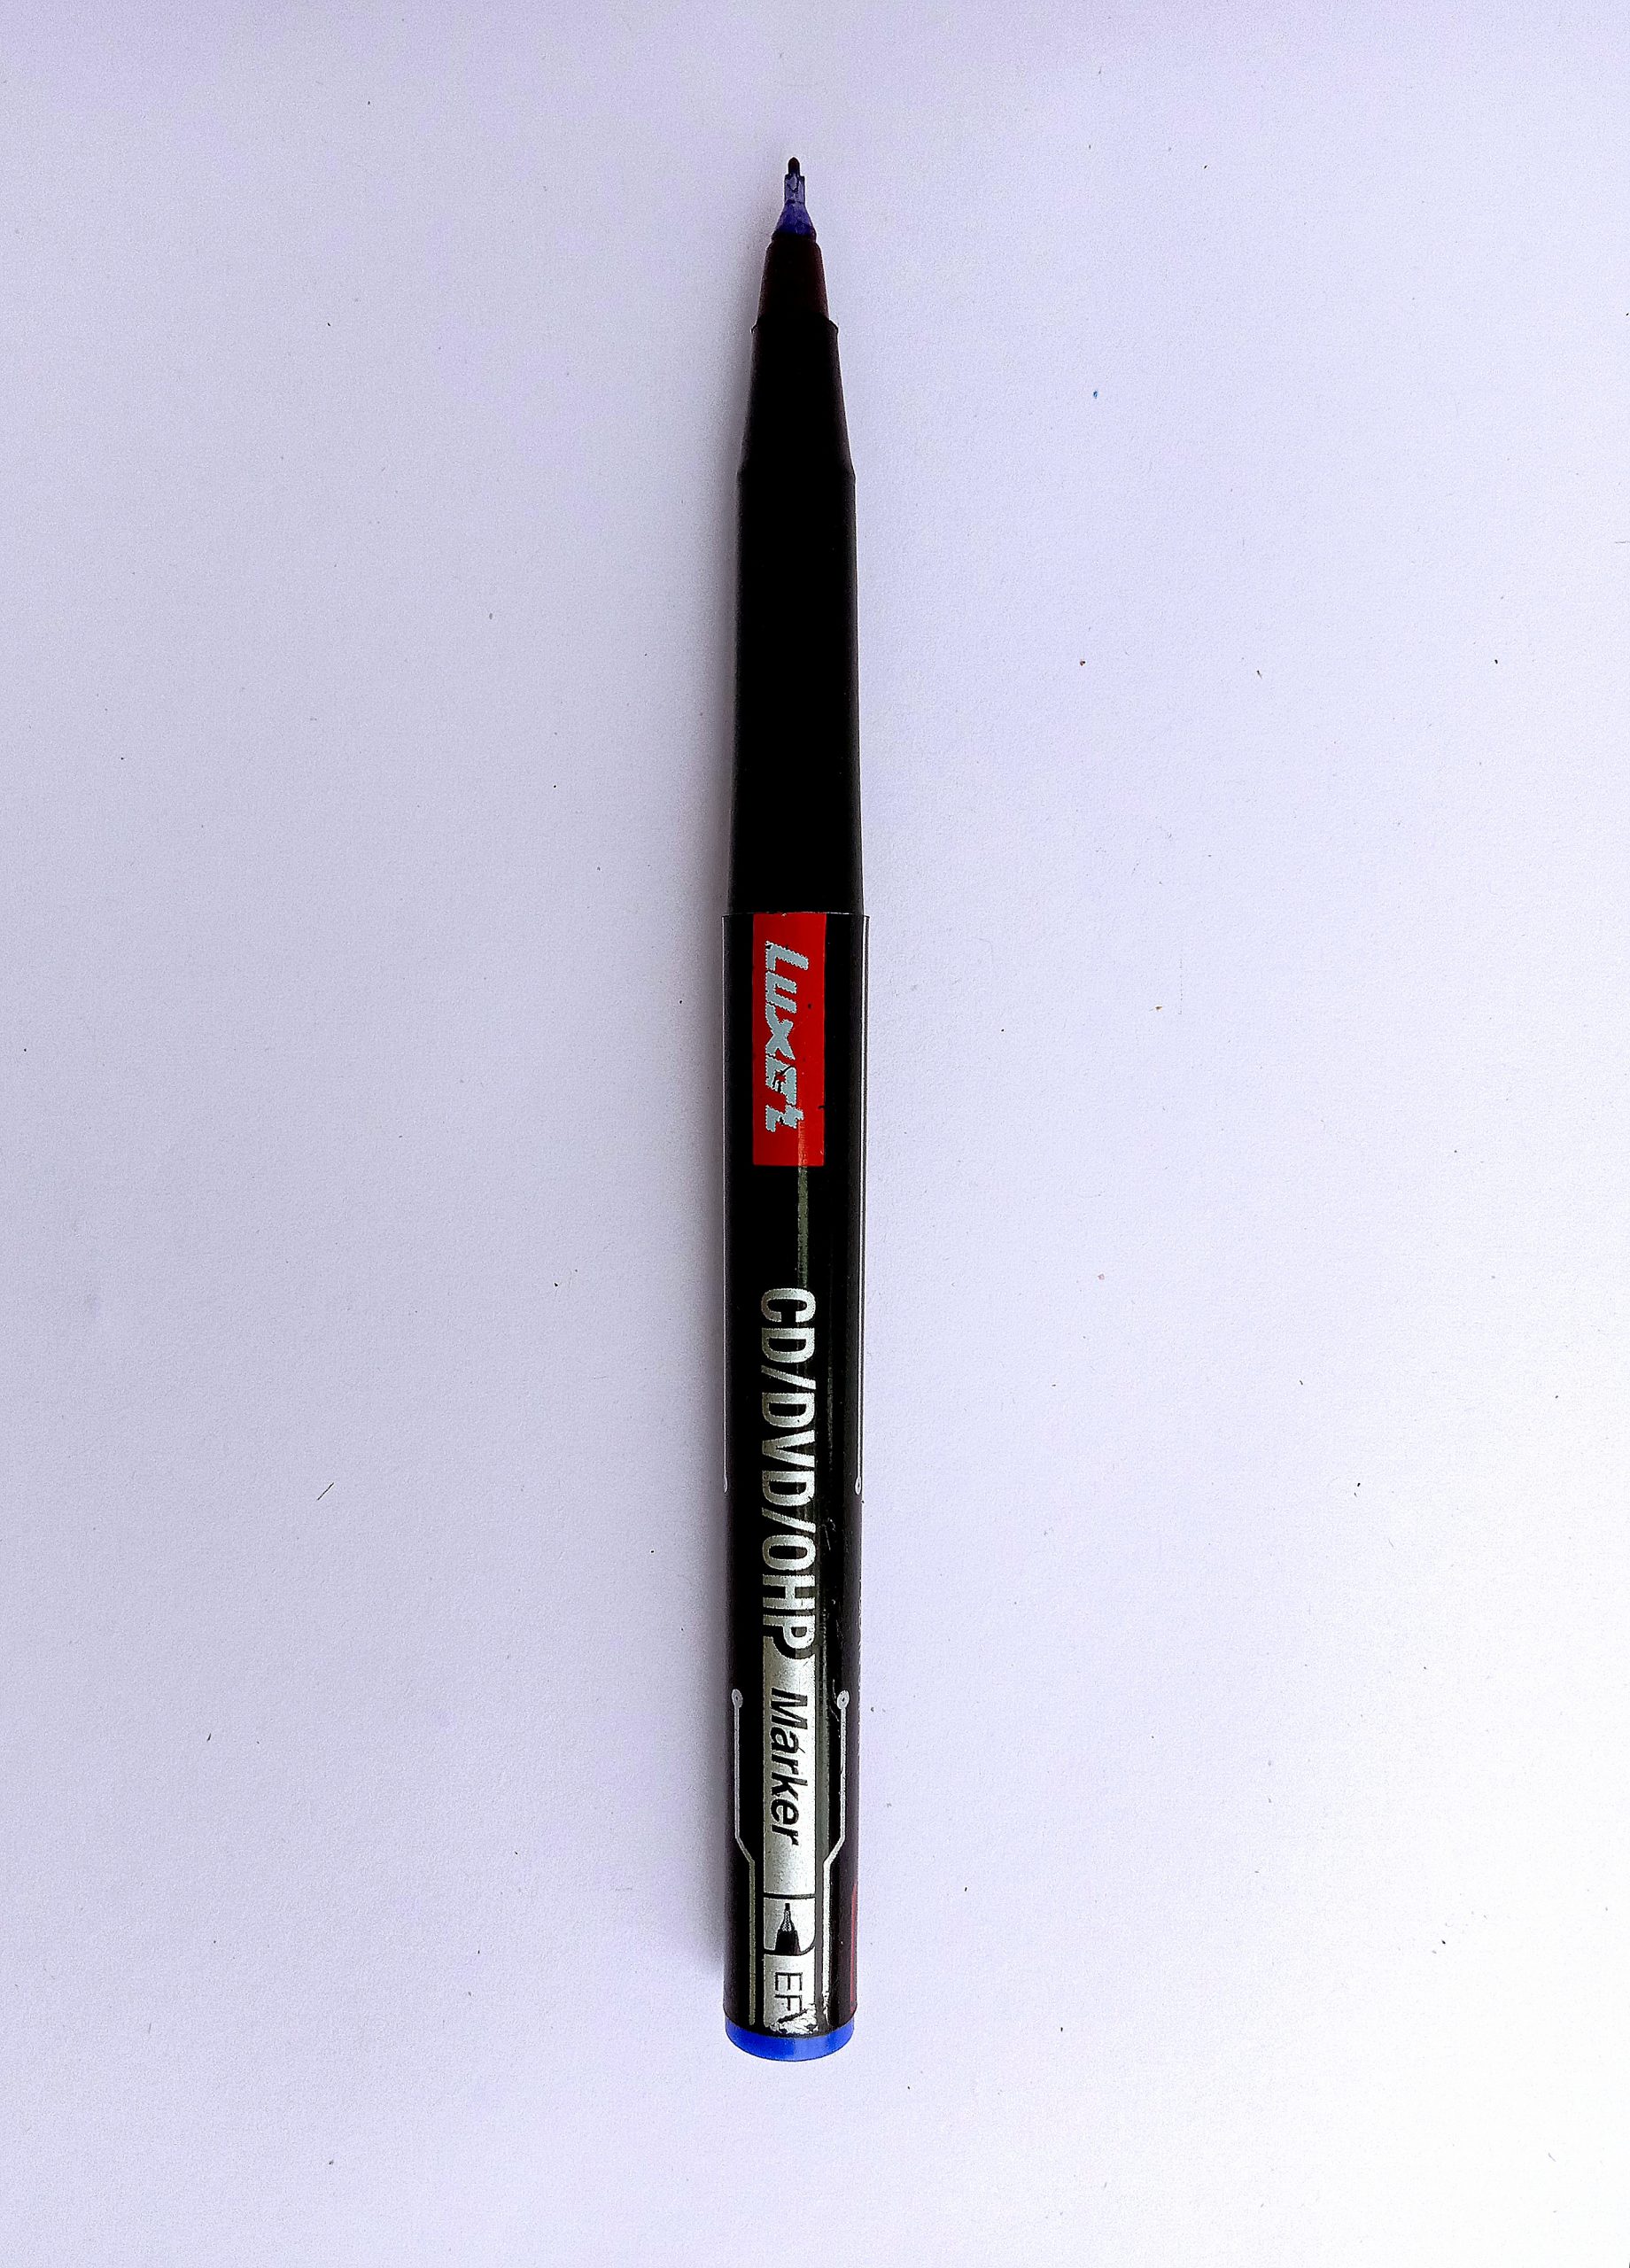 a marker pen